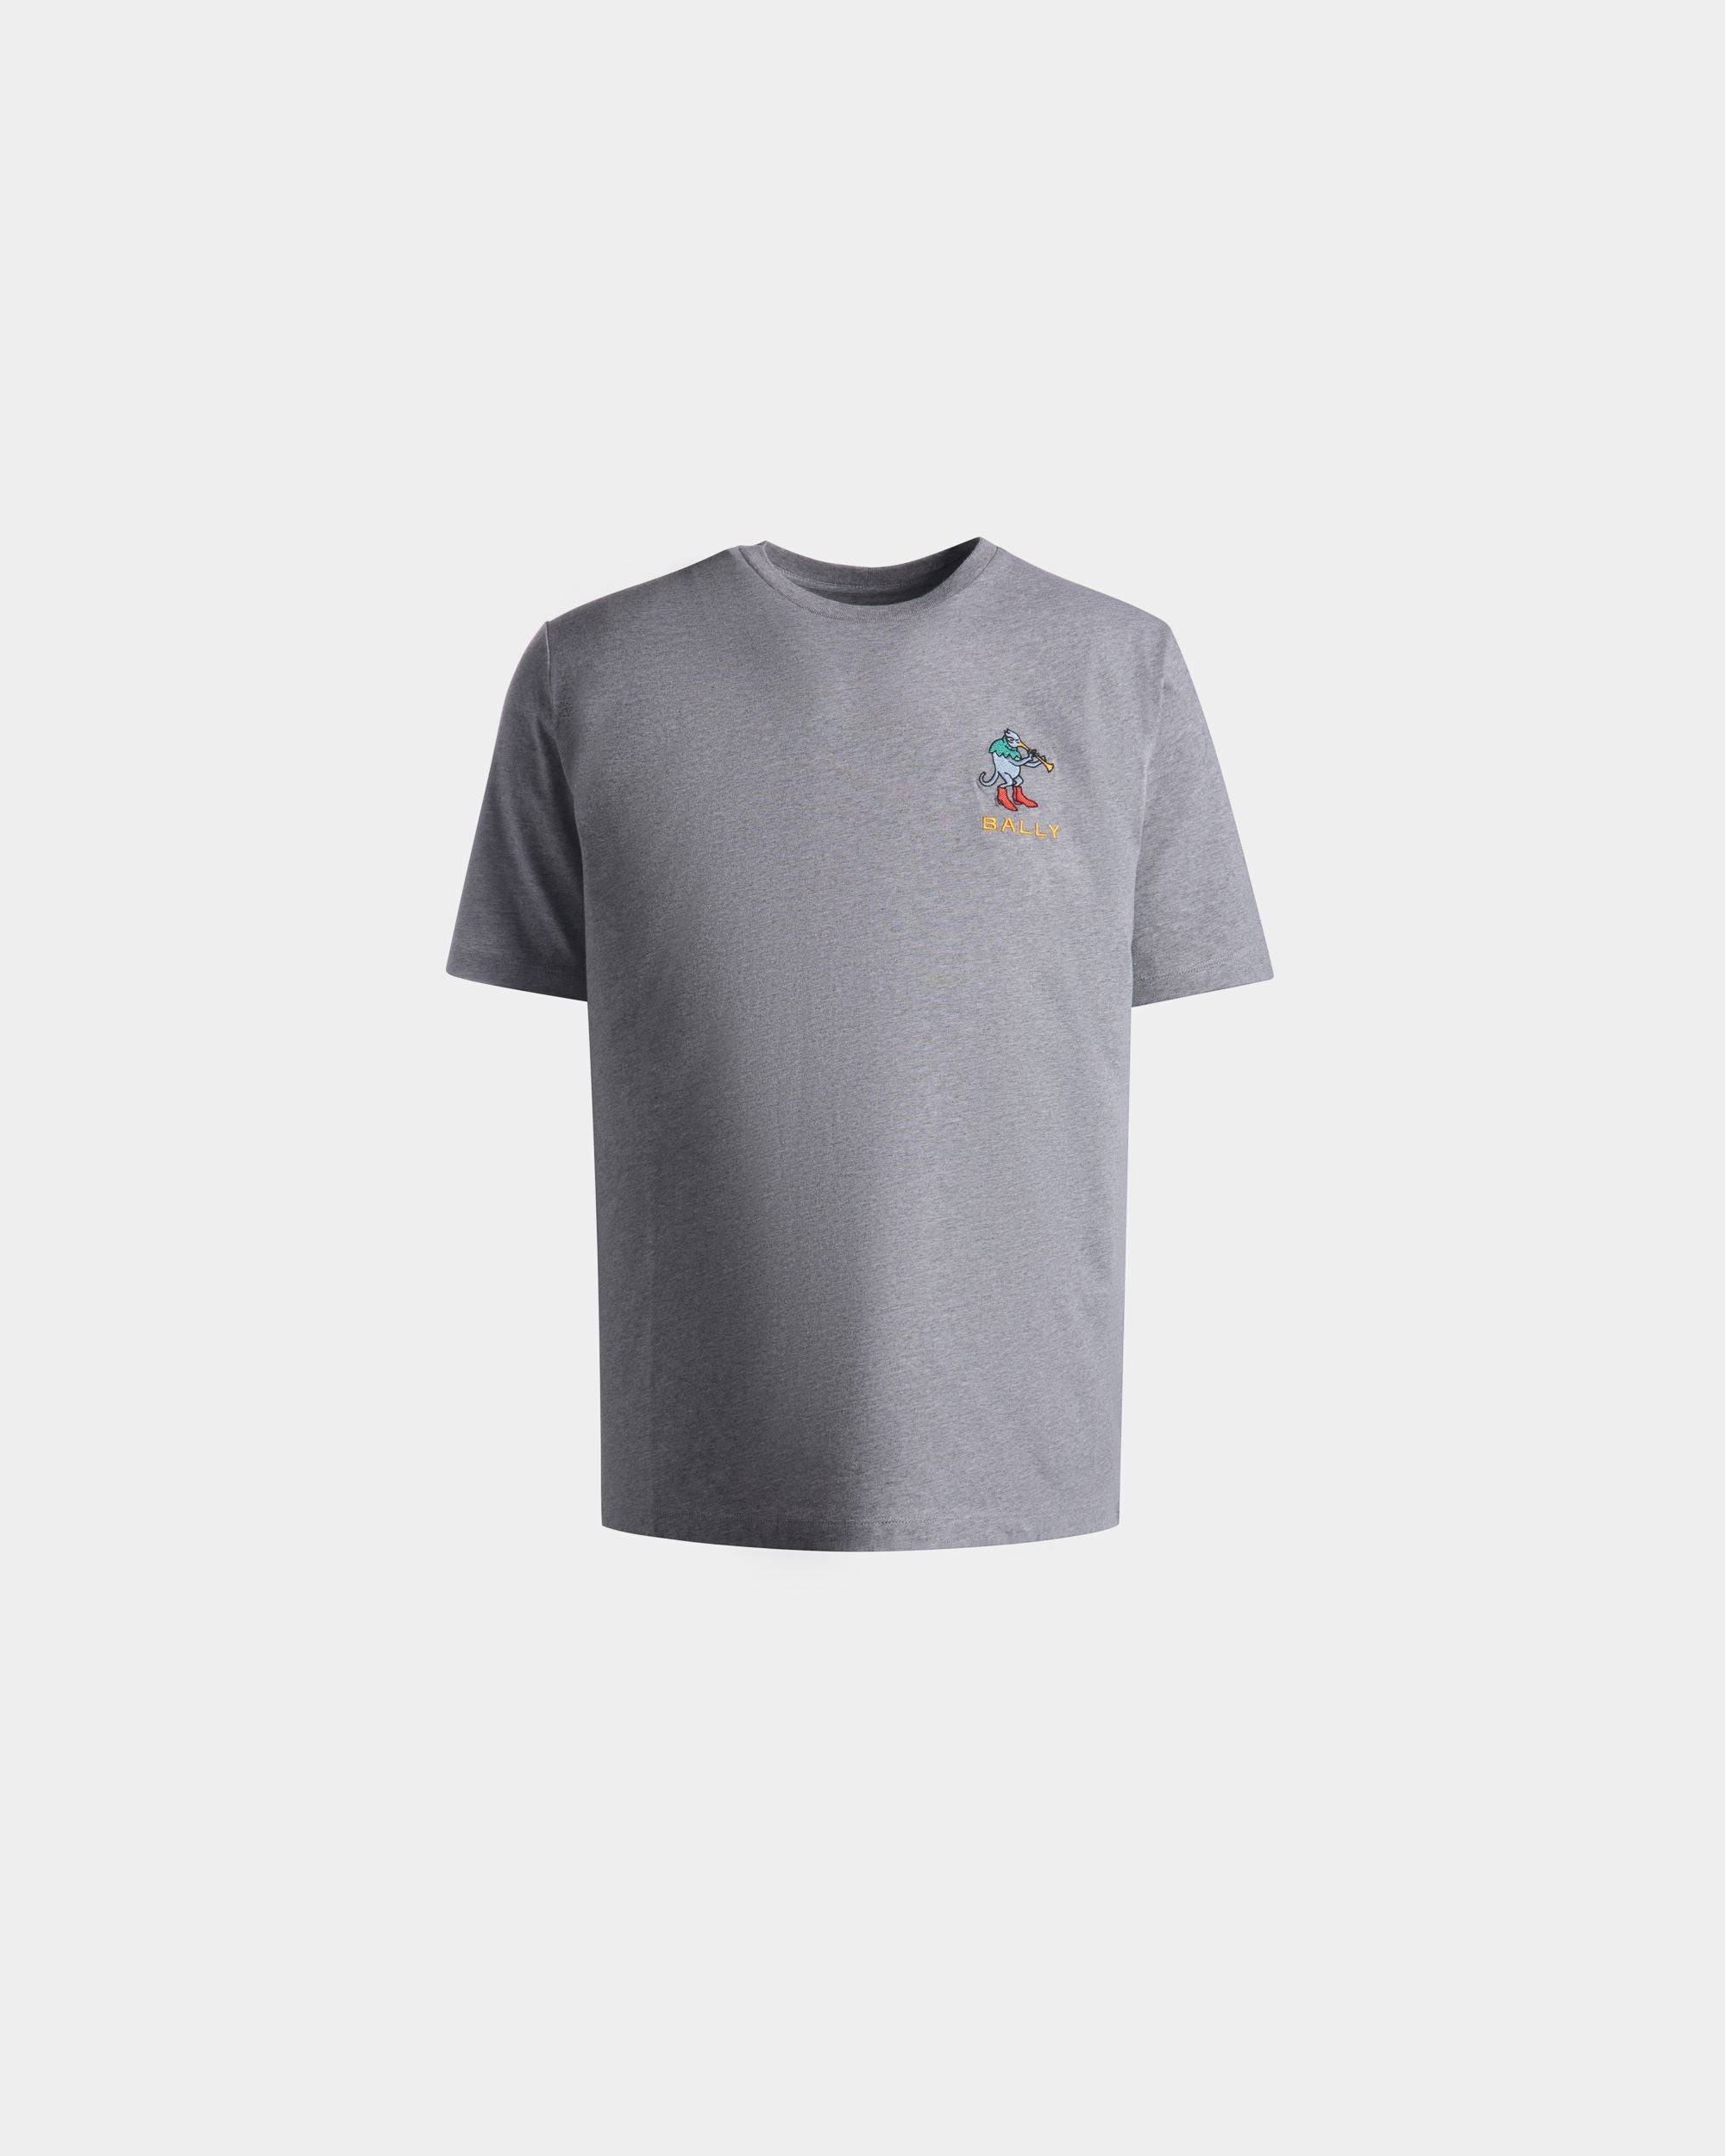 T-Shirt für Herren aus grau melierter Baumwolle | Bally | Still Life Vorderseite